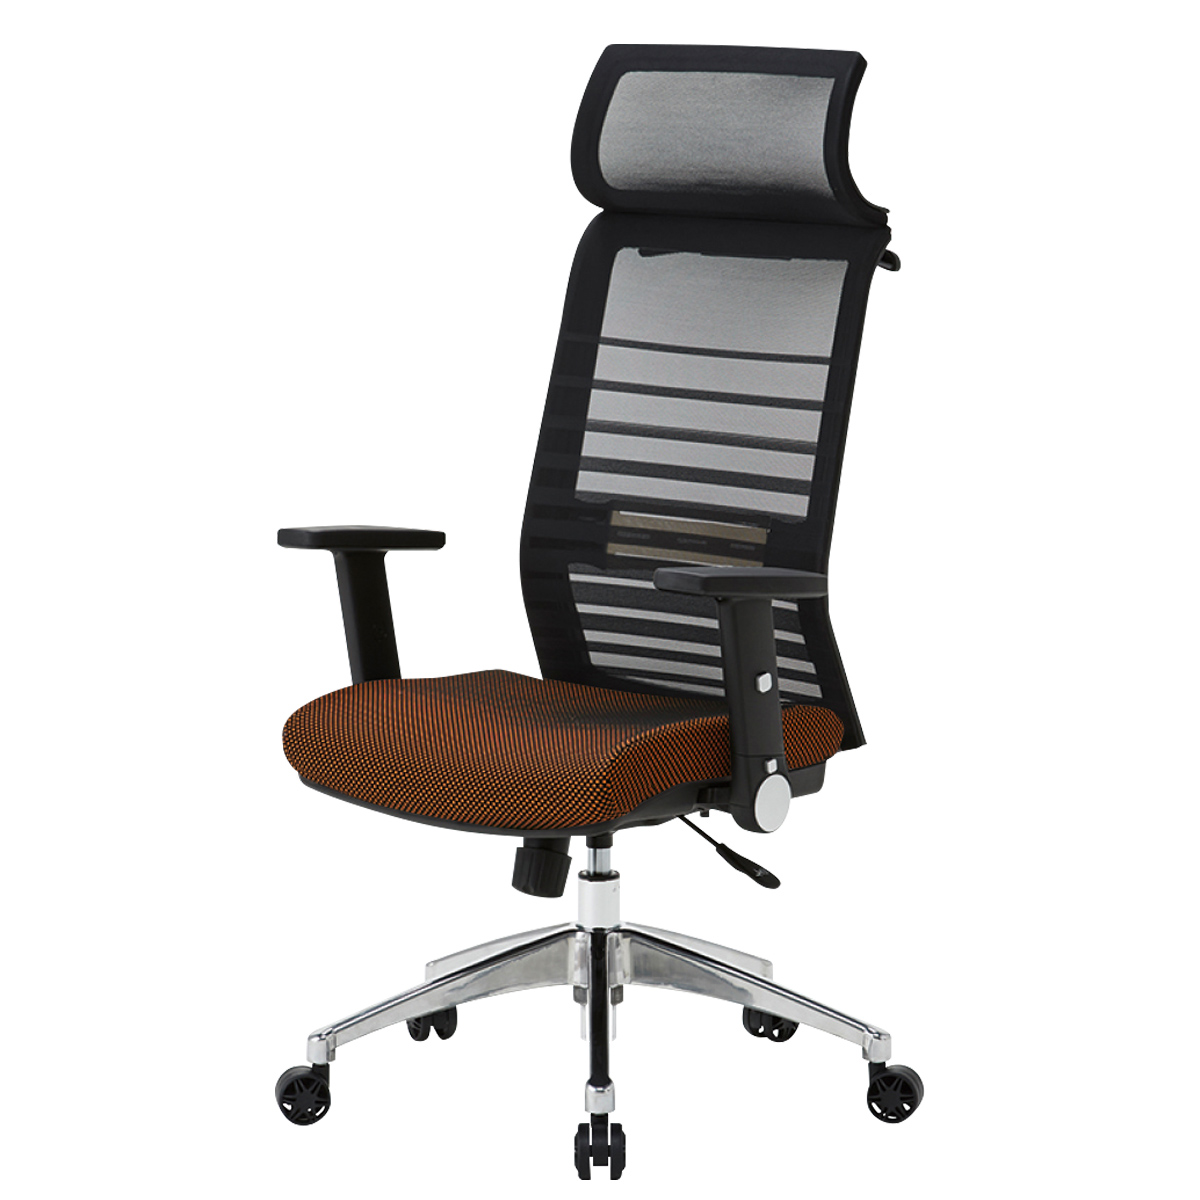 エルゴノミックチェアJG6 幅680 奥行675-730 高さ1180-1270 KF-JG6138 通販 オフィスチェア・事務椅子  オフィス家具のカグクロ